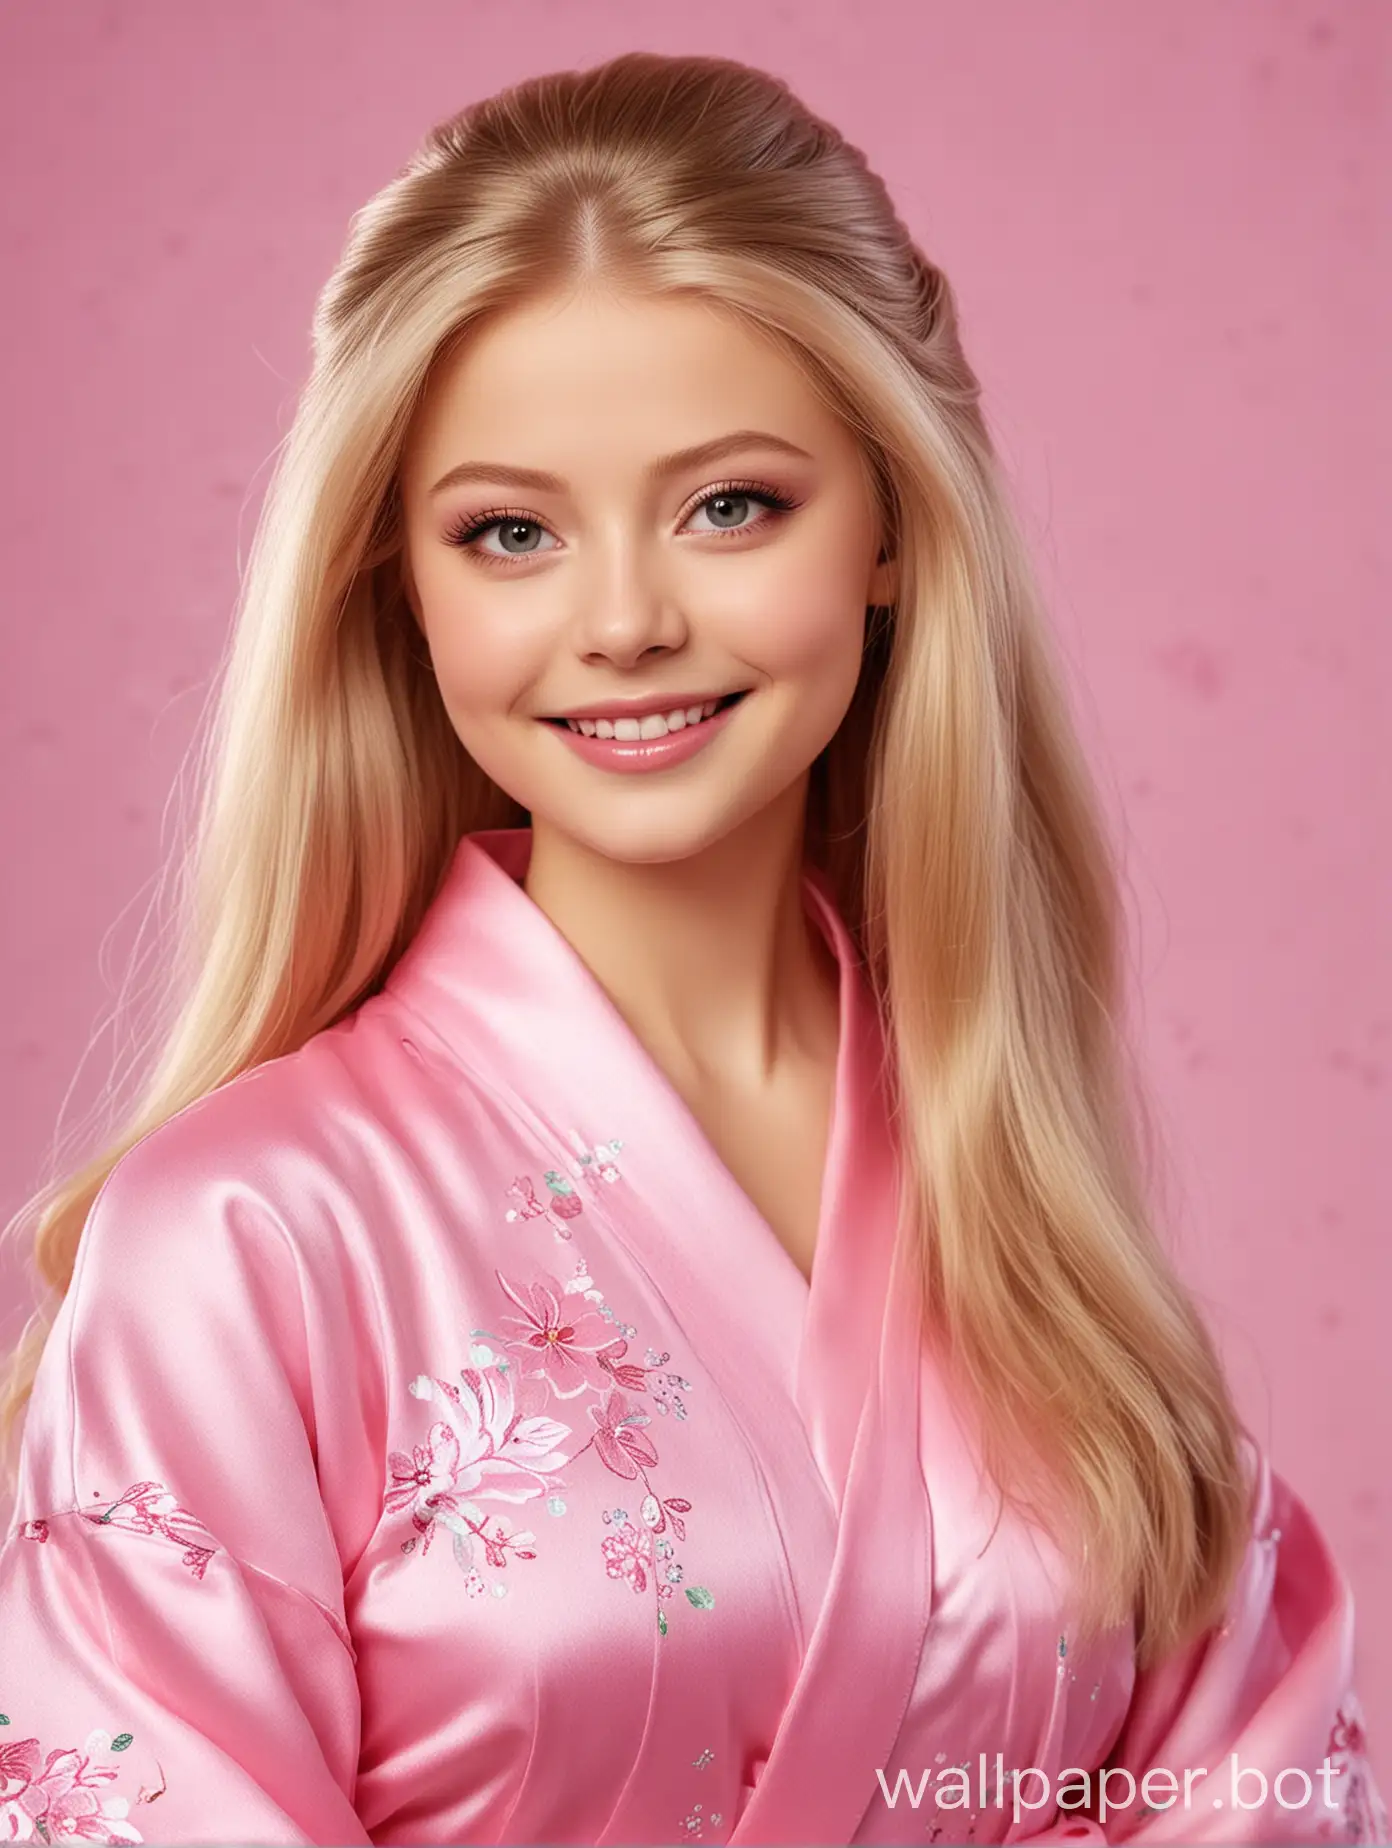 Юлия Липницкая в образе Барби с длинными шелковистыми волосами в розовом шелковом халате улыбается